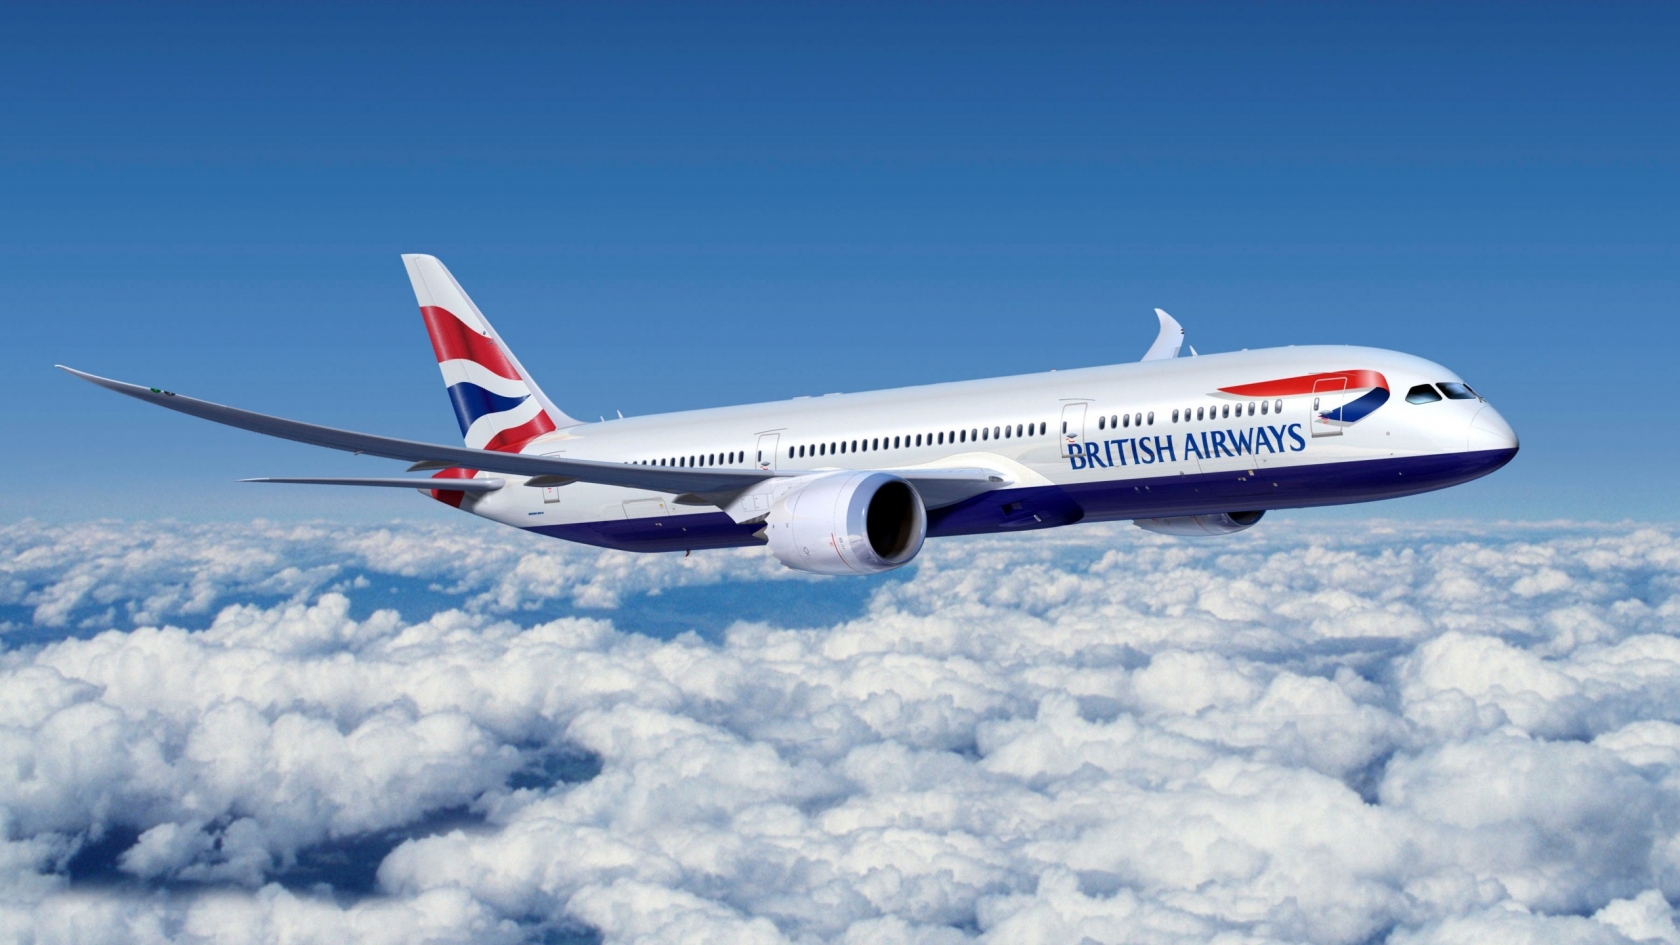 Boeing 777 British Airways for 1680 x 945 HDTV resolution